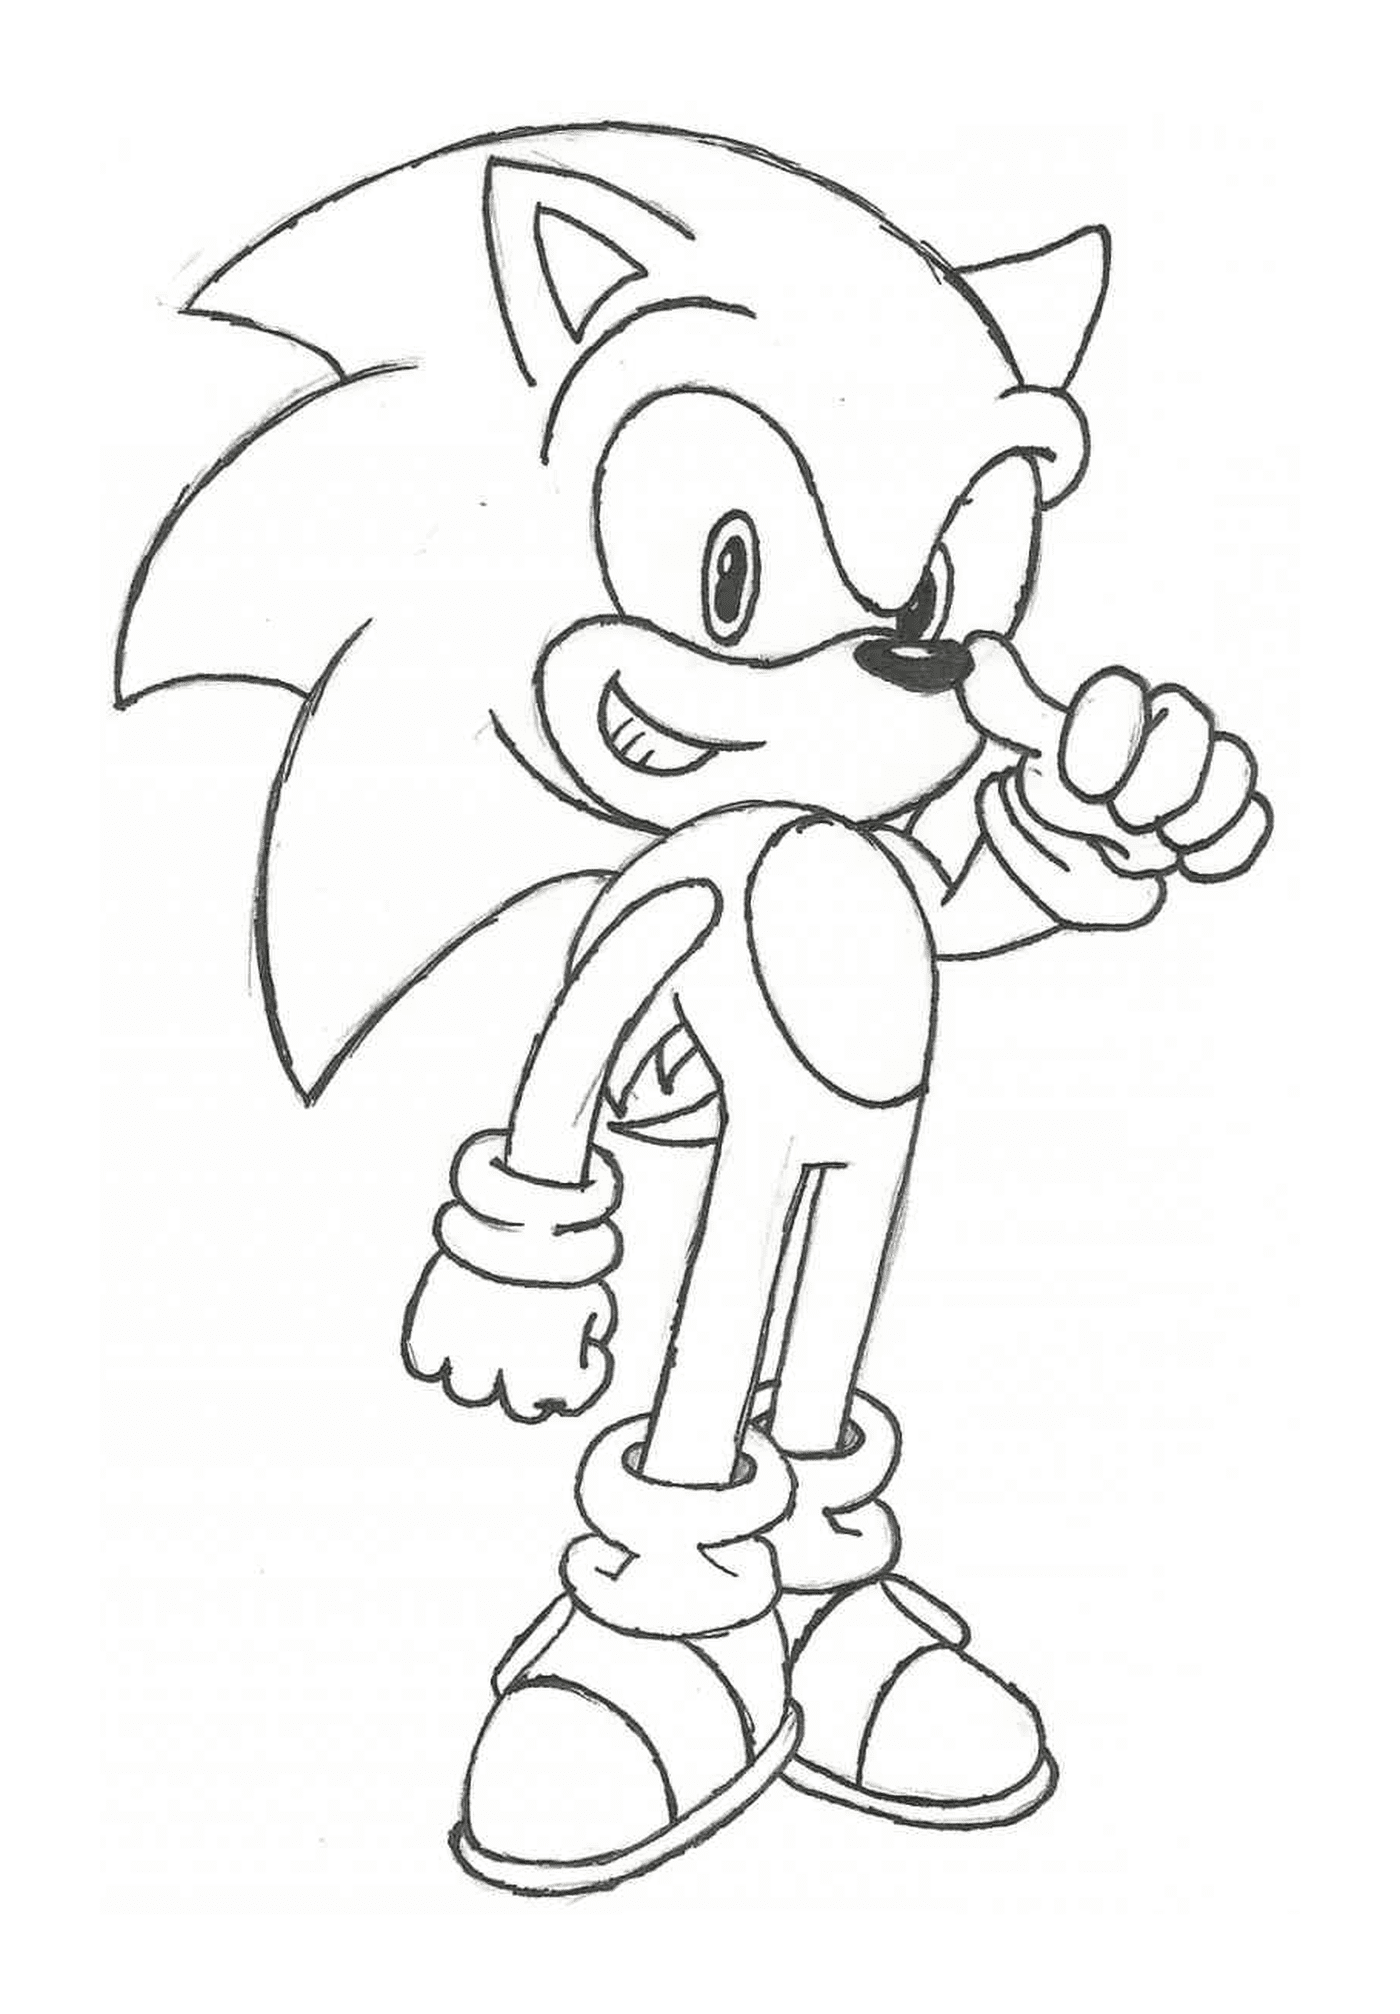  Sonic mit einer heroischen Pose 